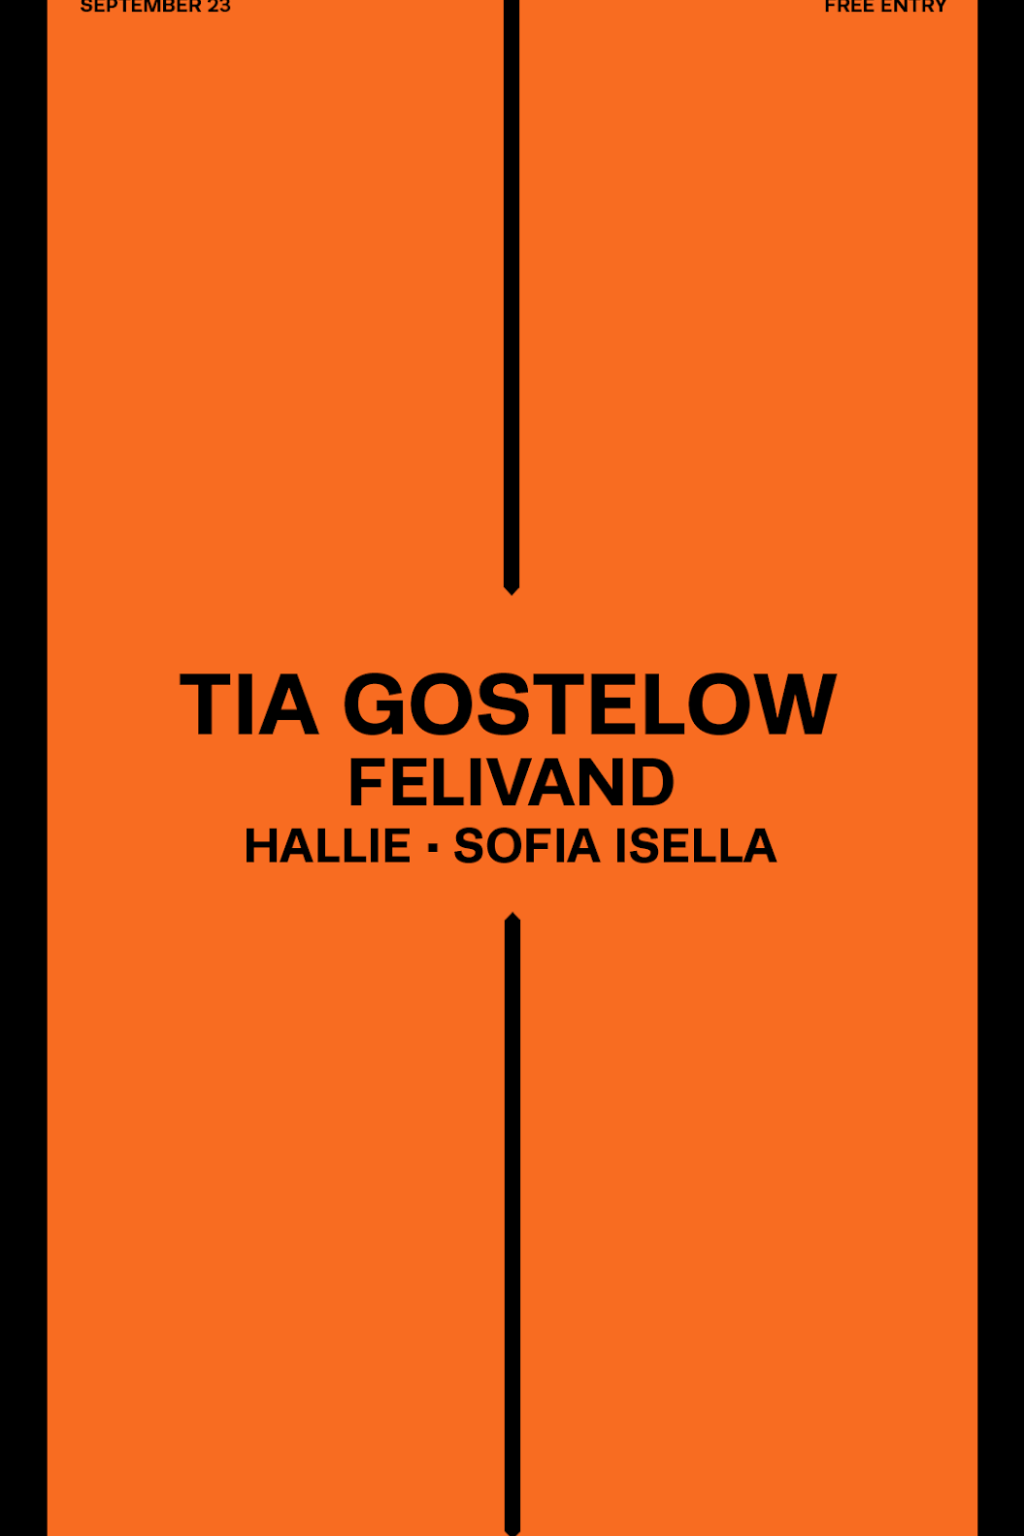 Tia Gostelow